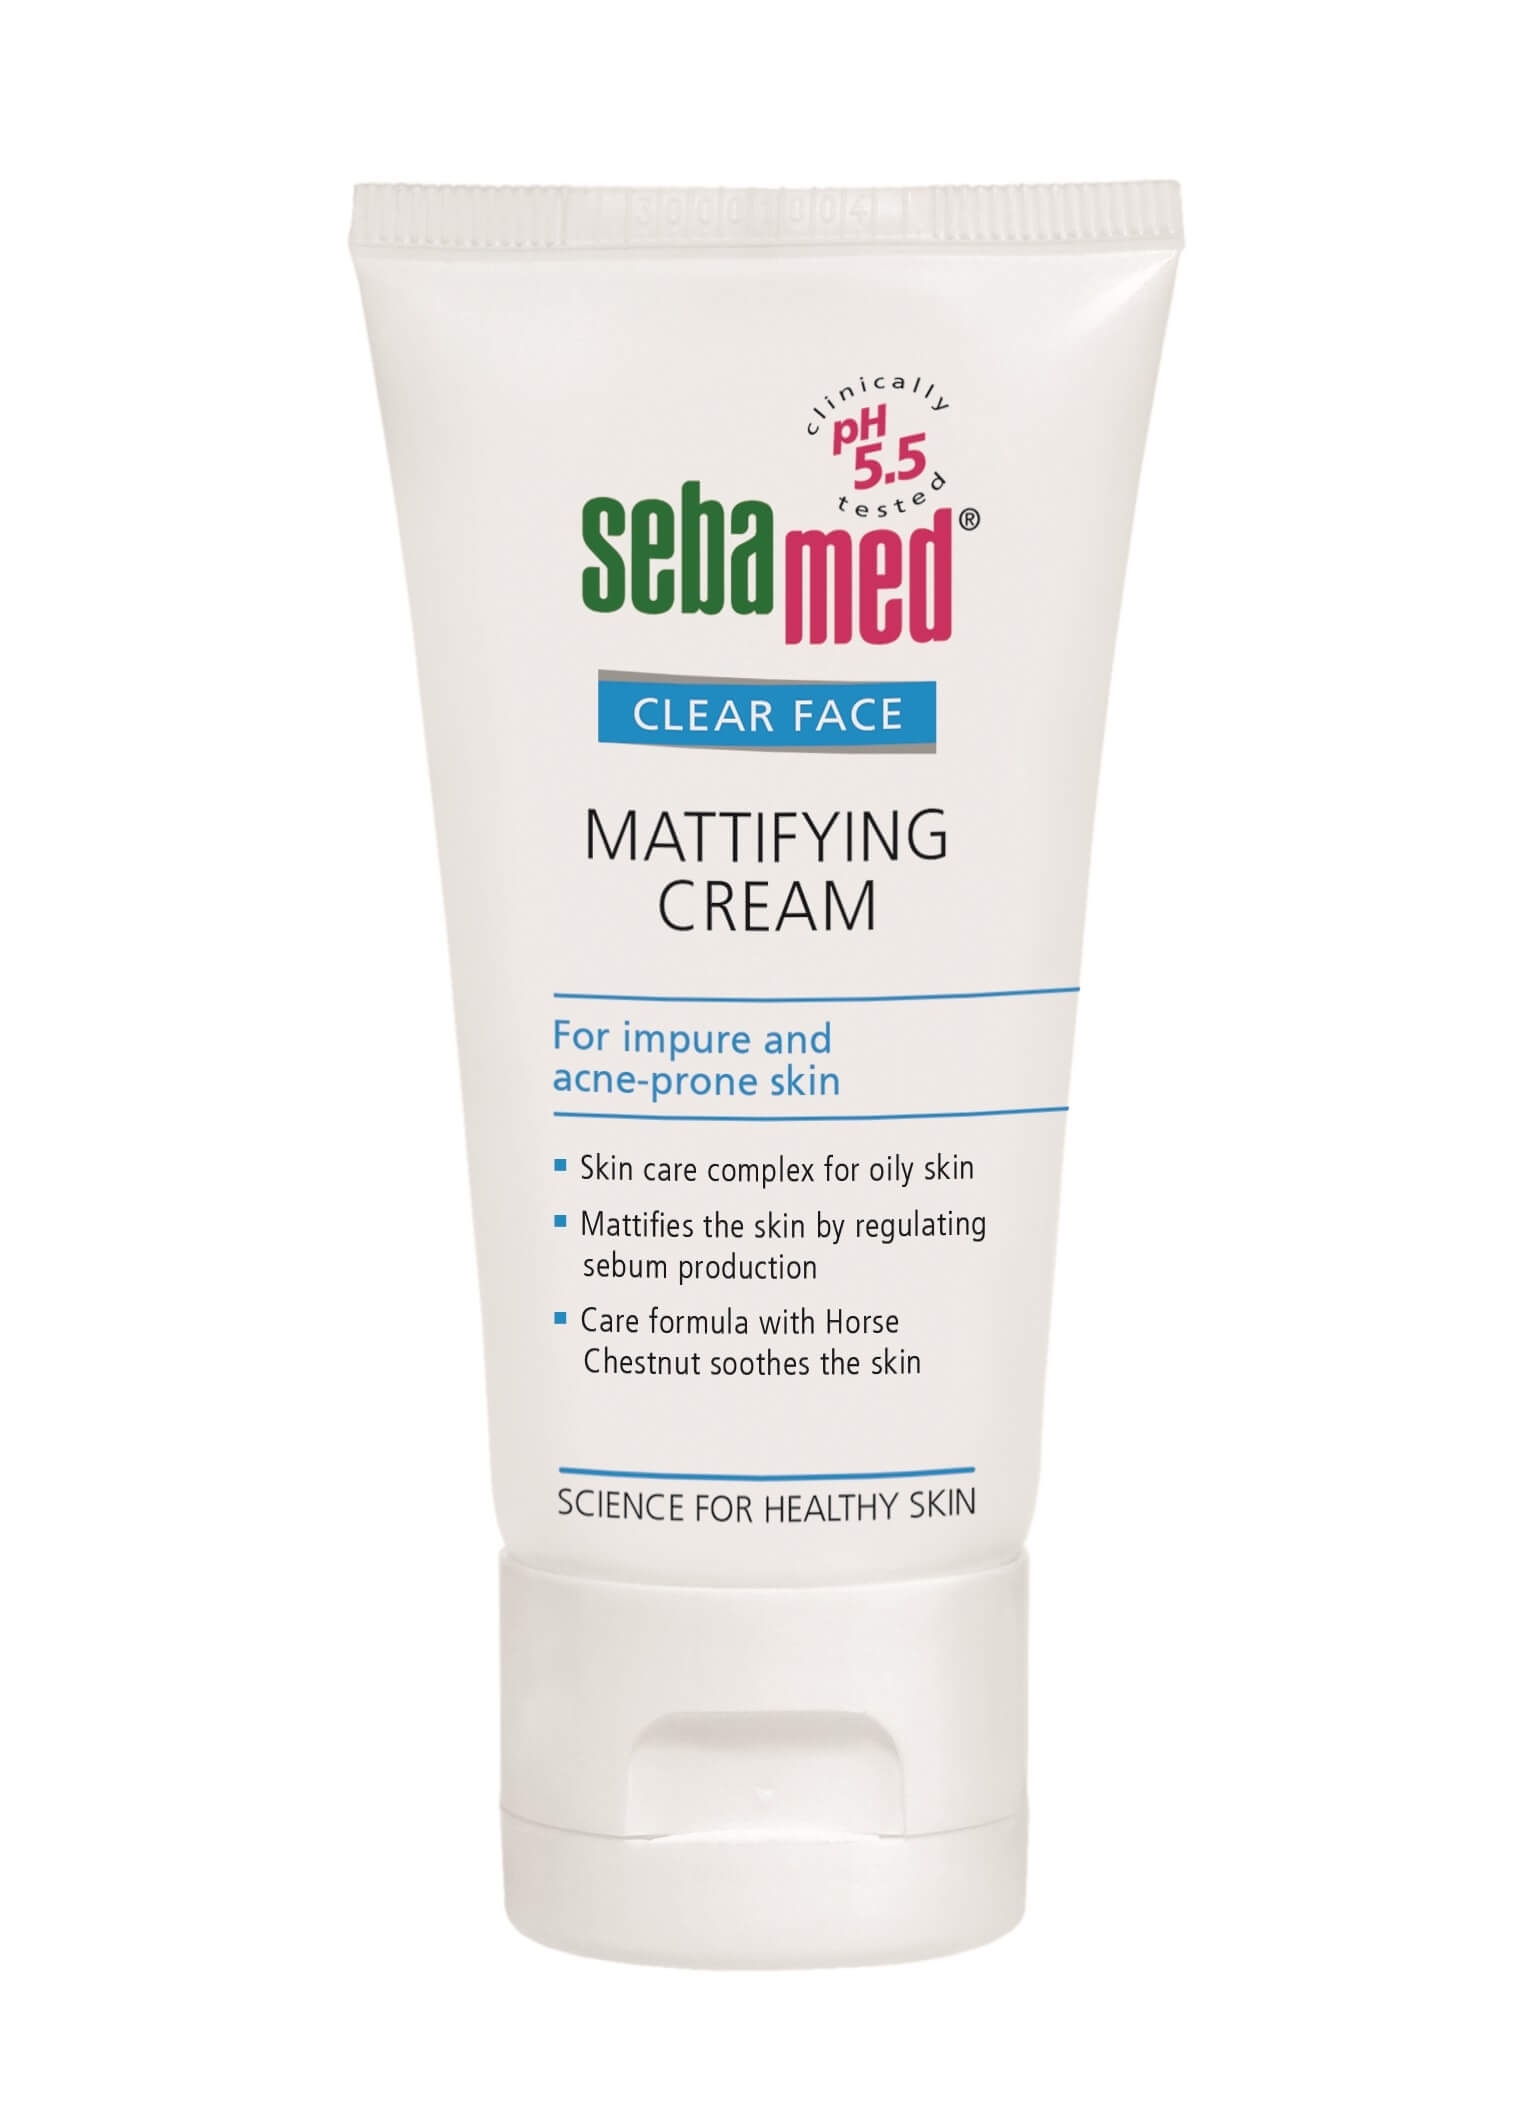 Zobrazit detail výrobku Sebamed Matující krém Clear Face (Mattifying Cream) 50 ml